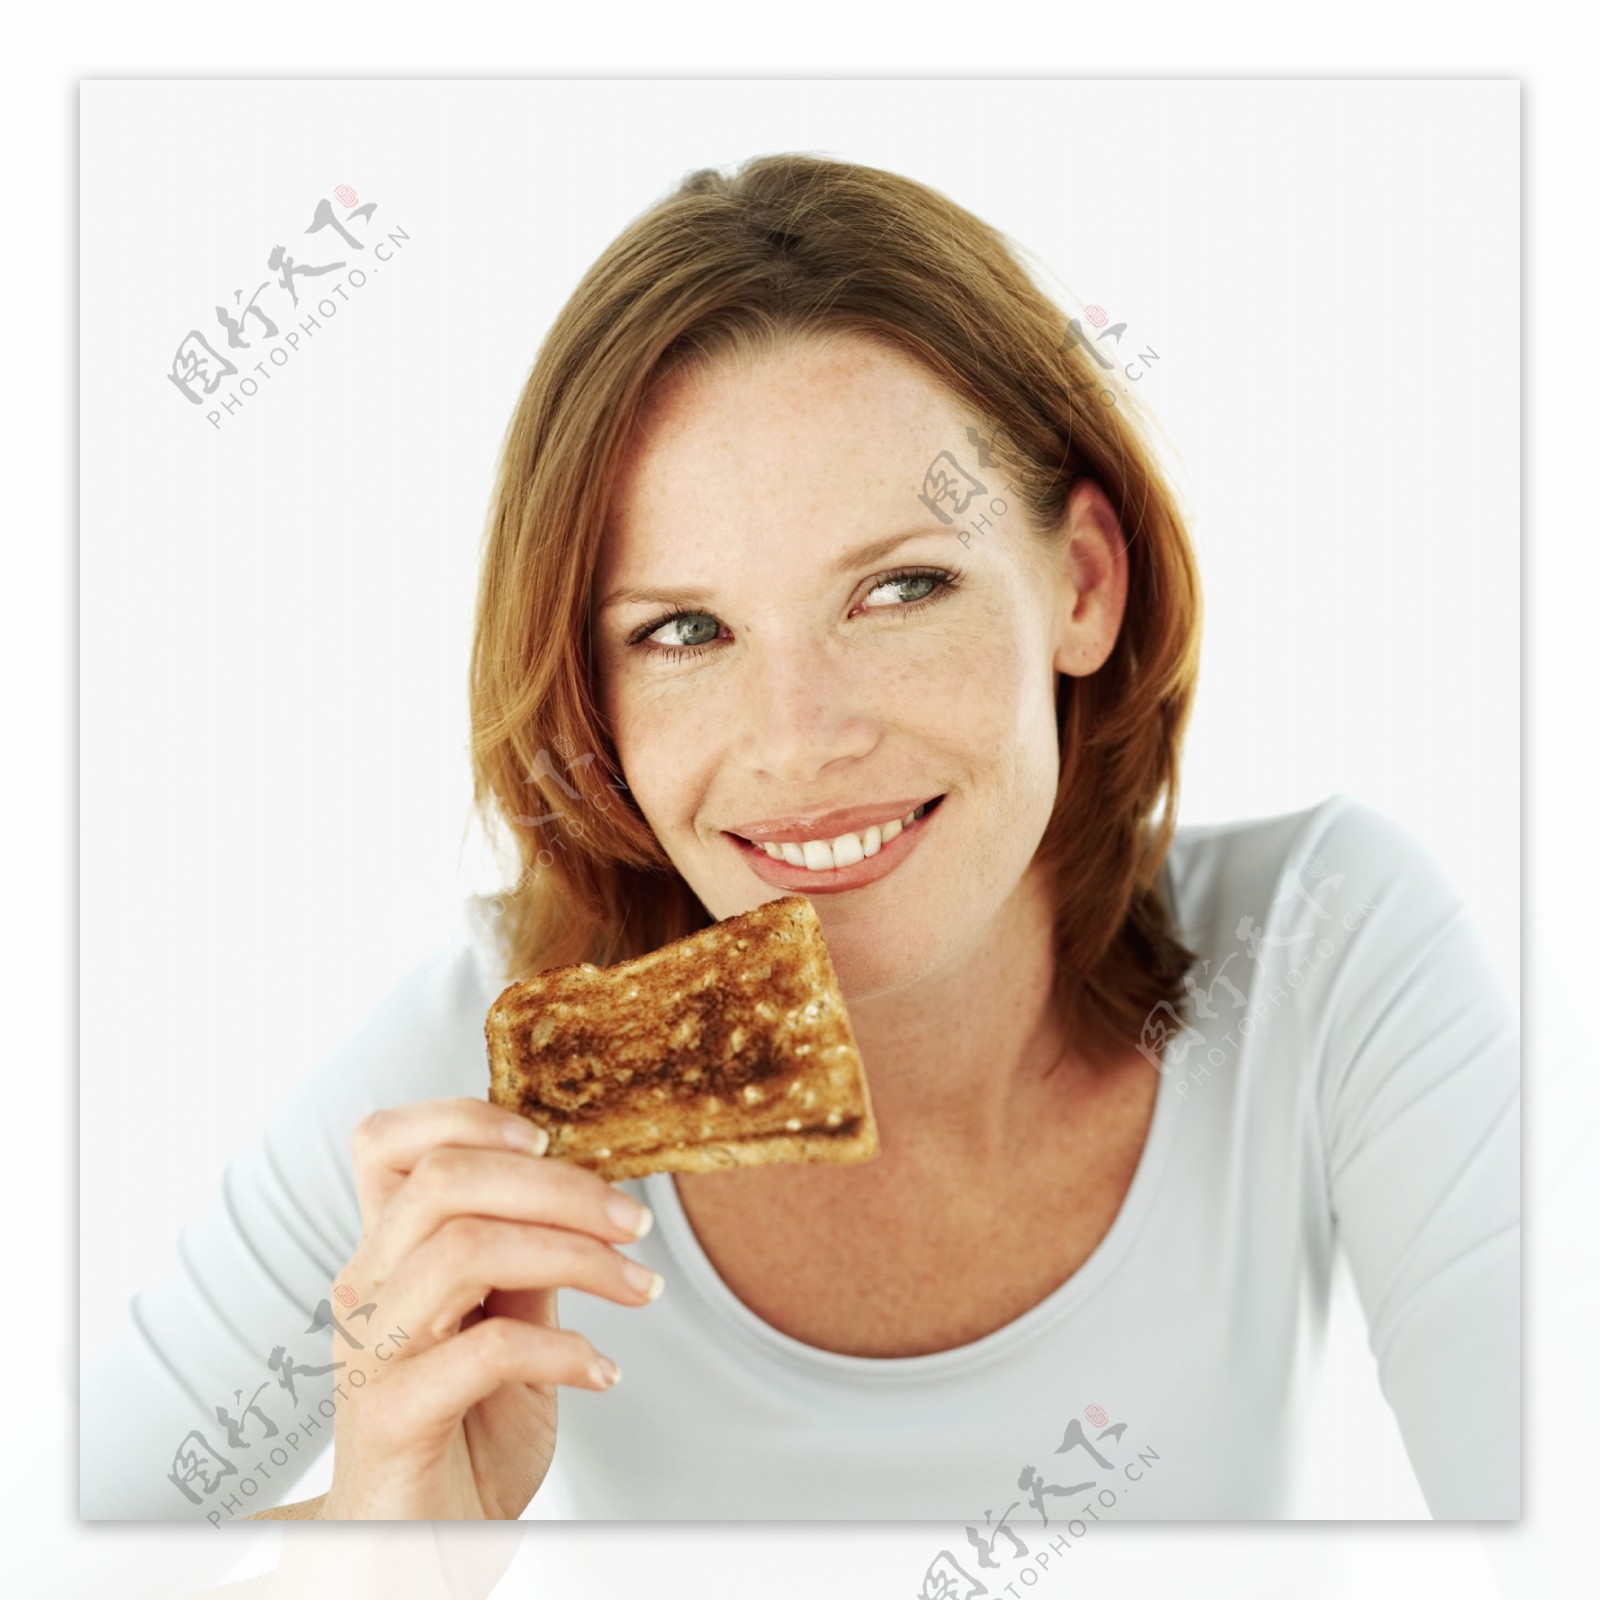 吃面包的女人图片